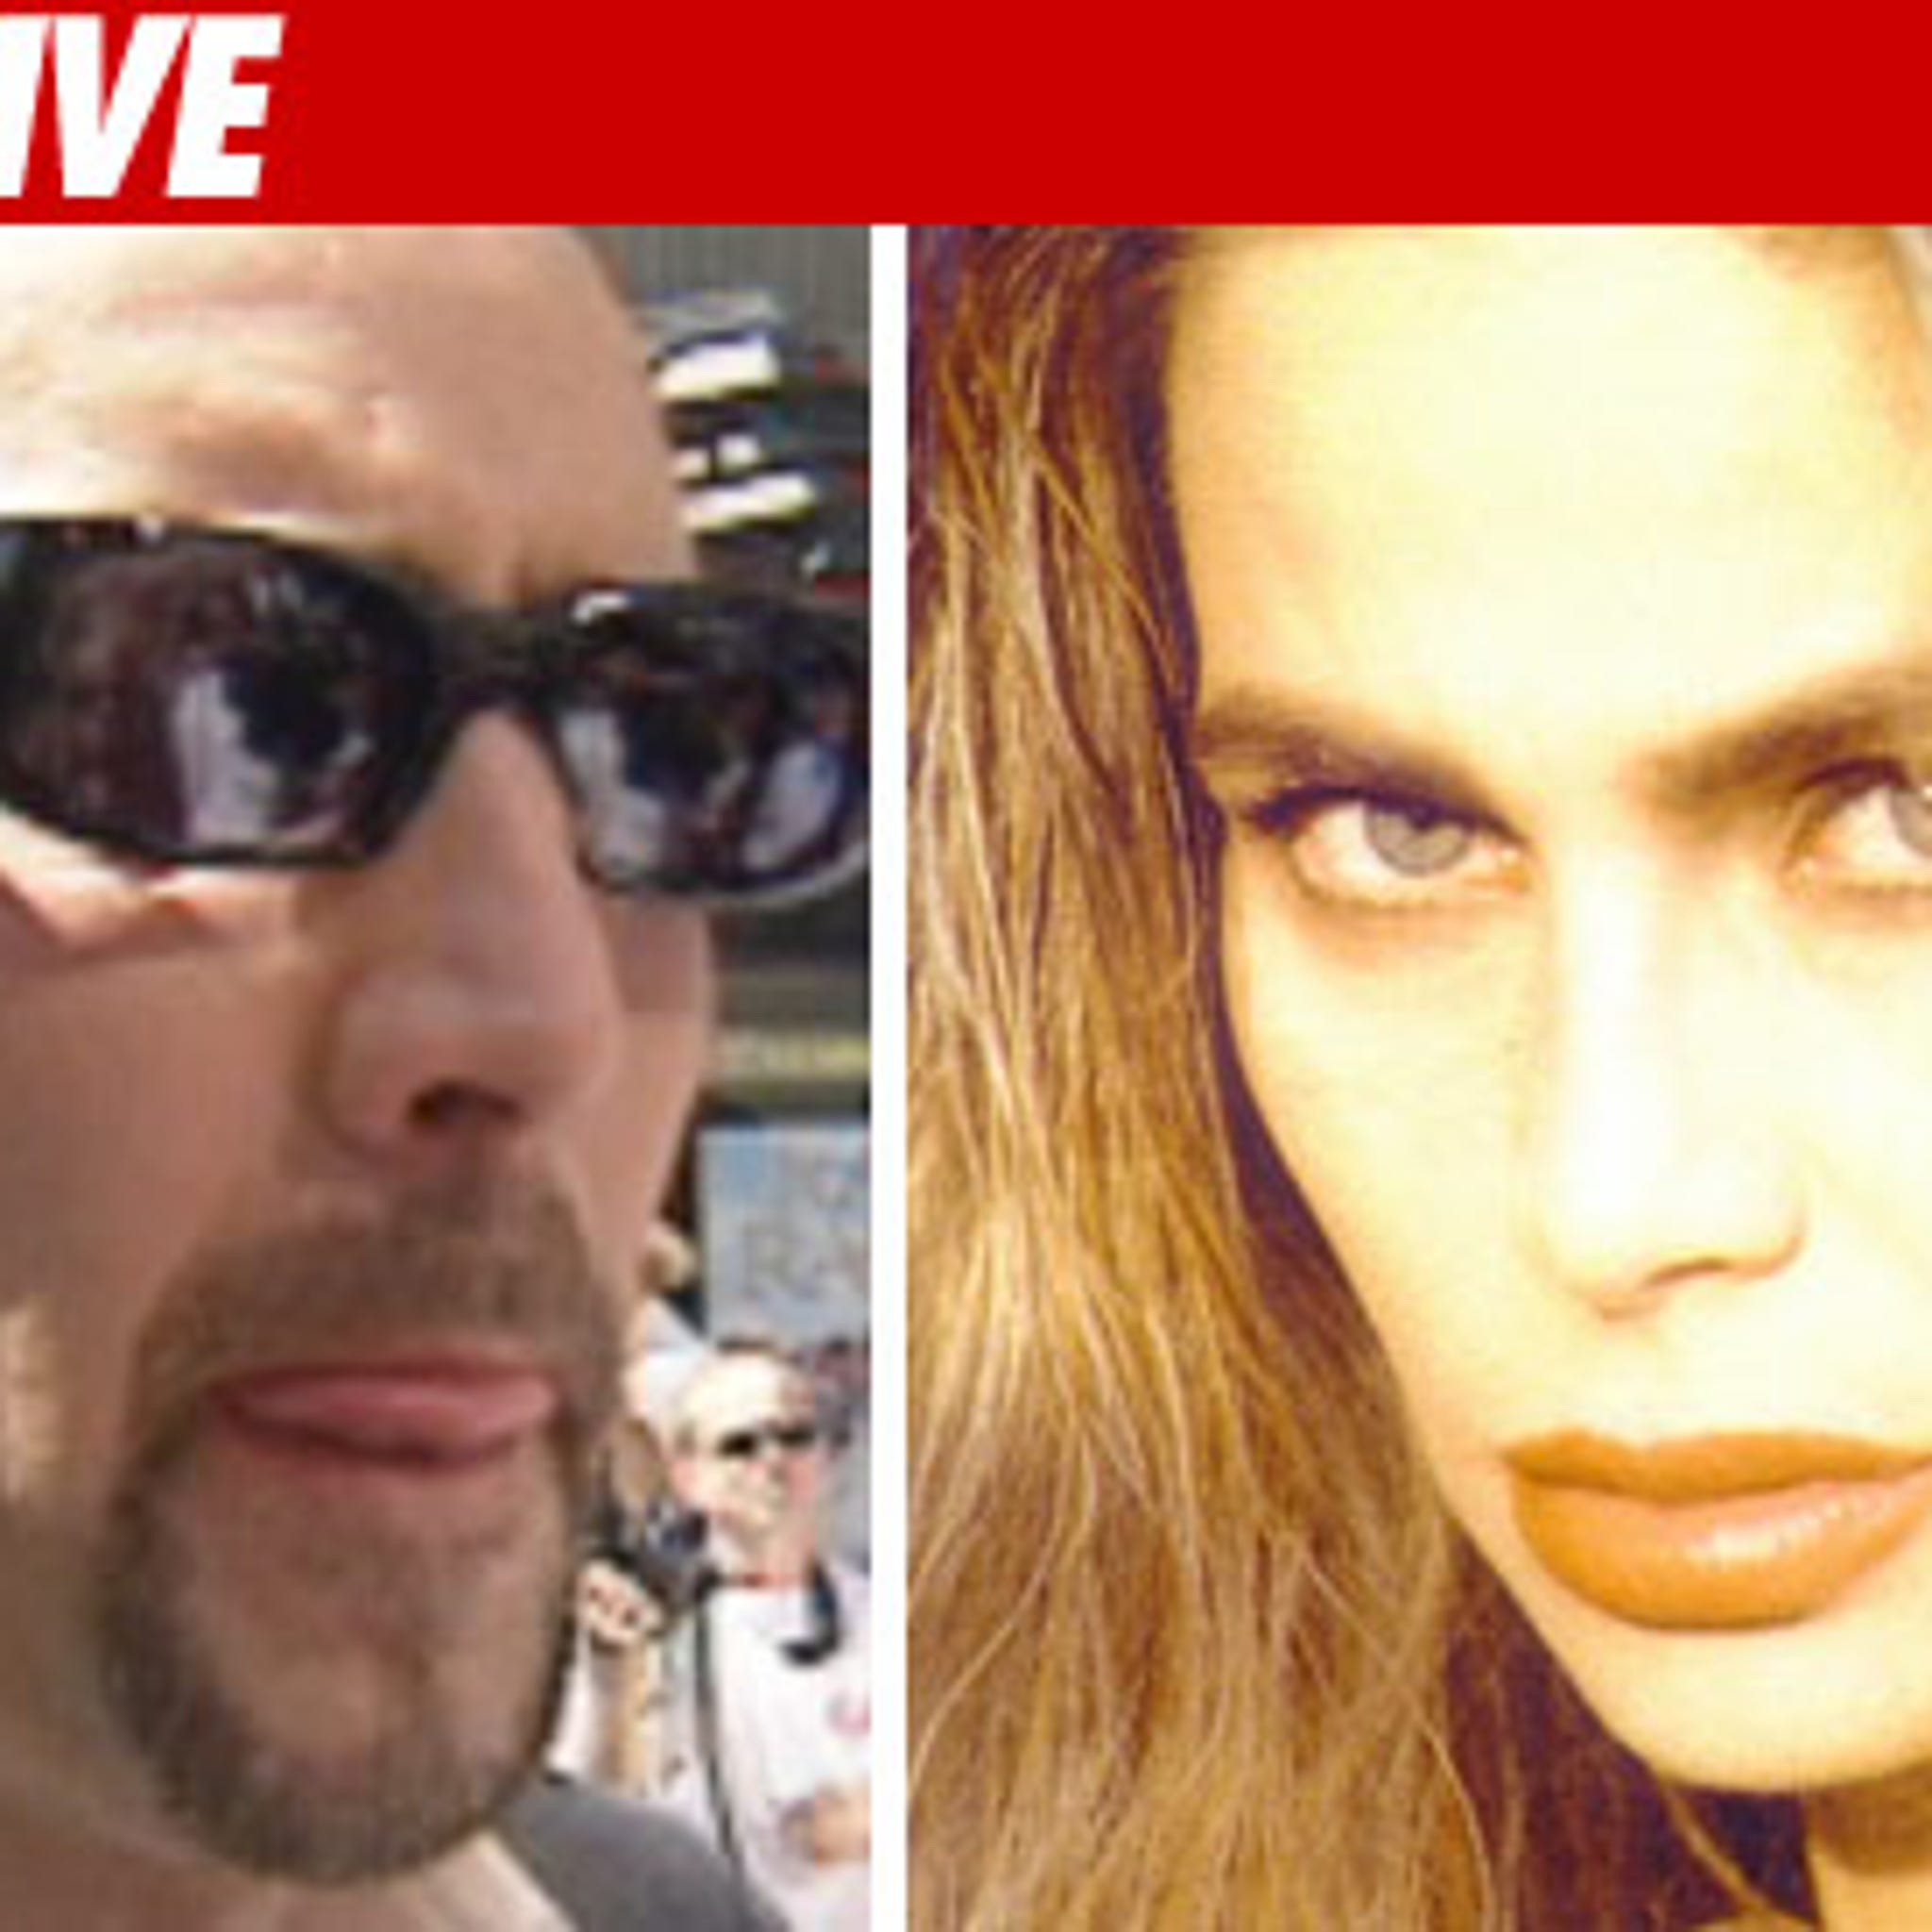 Nicolas Cage's ex Christina Fulton moves for conservatorship of